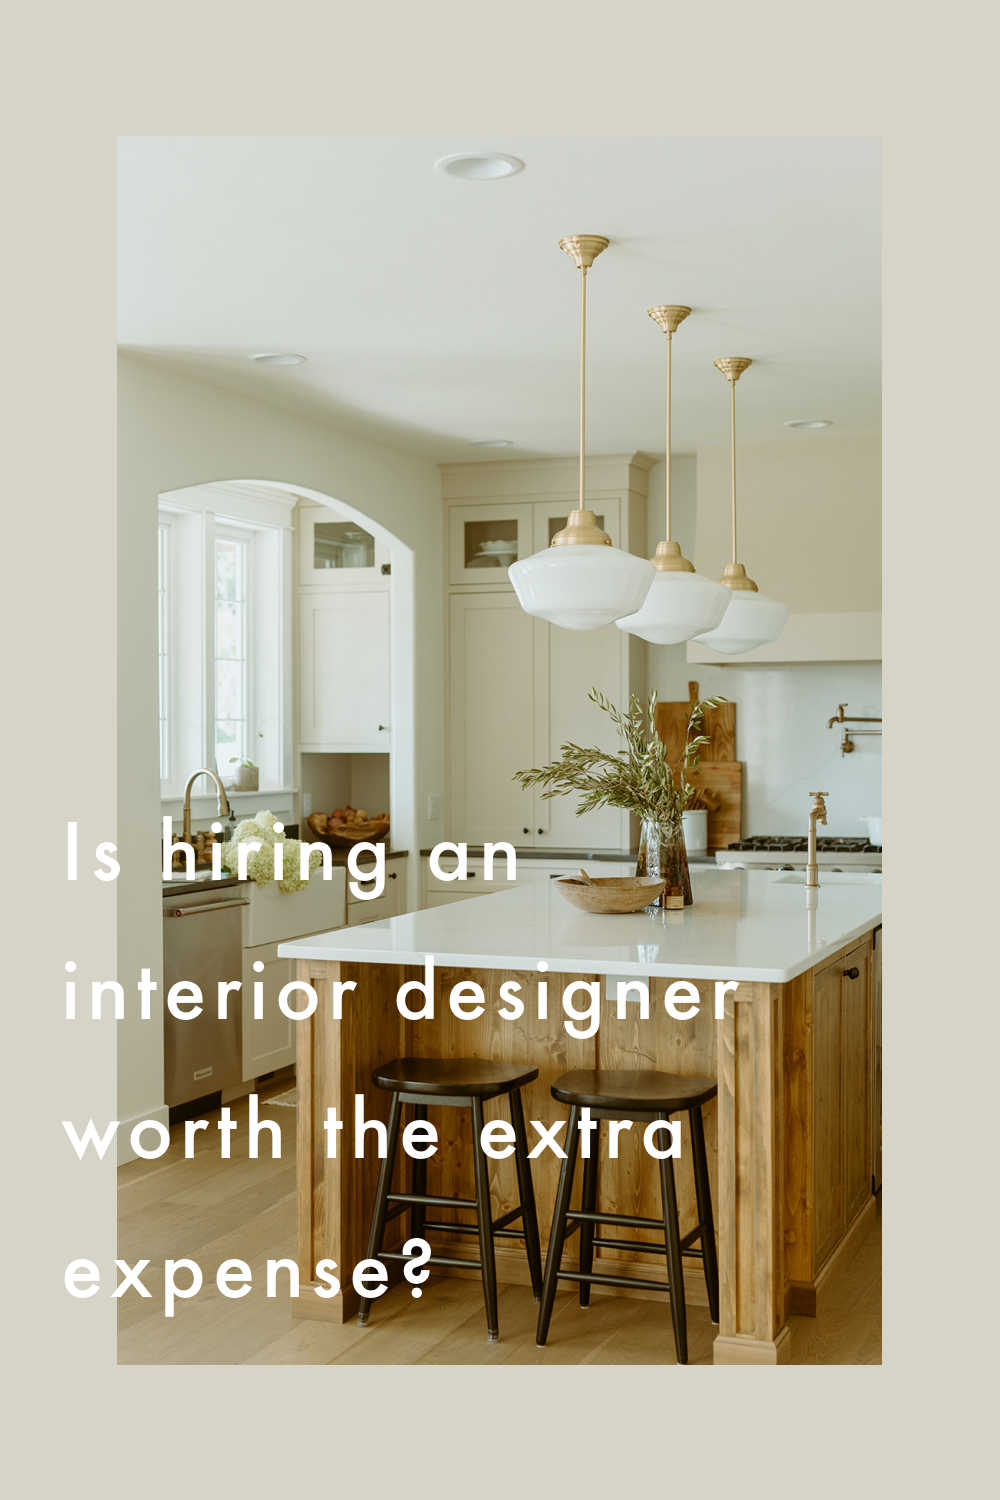 interior designer for kitchen remodel